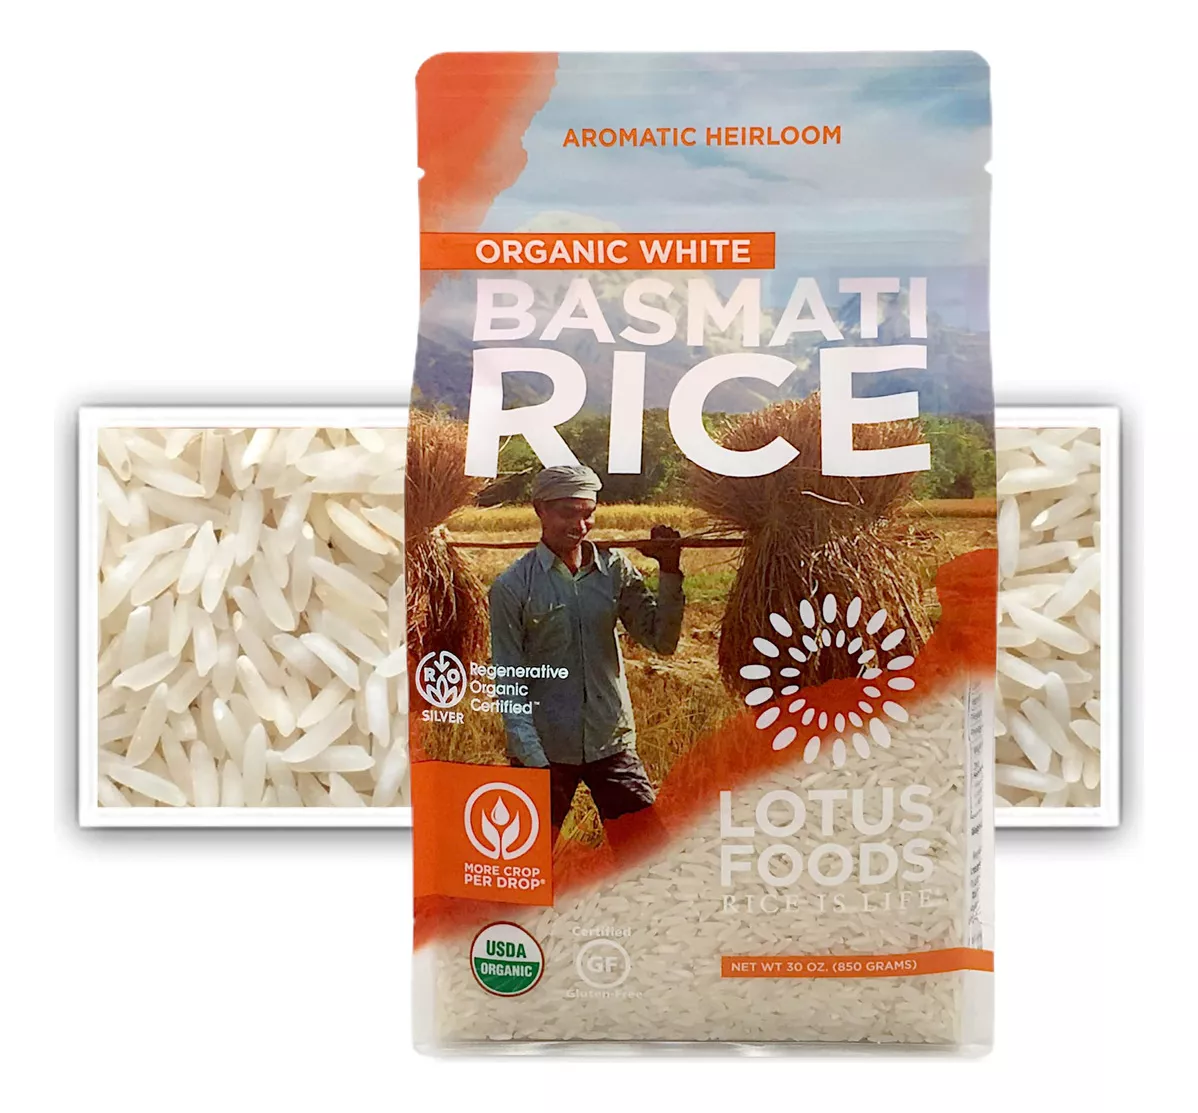 Segunda imagen para búsqueda de arroz basmati